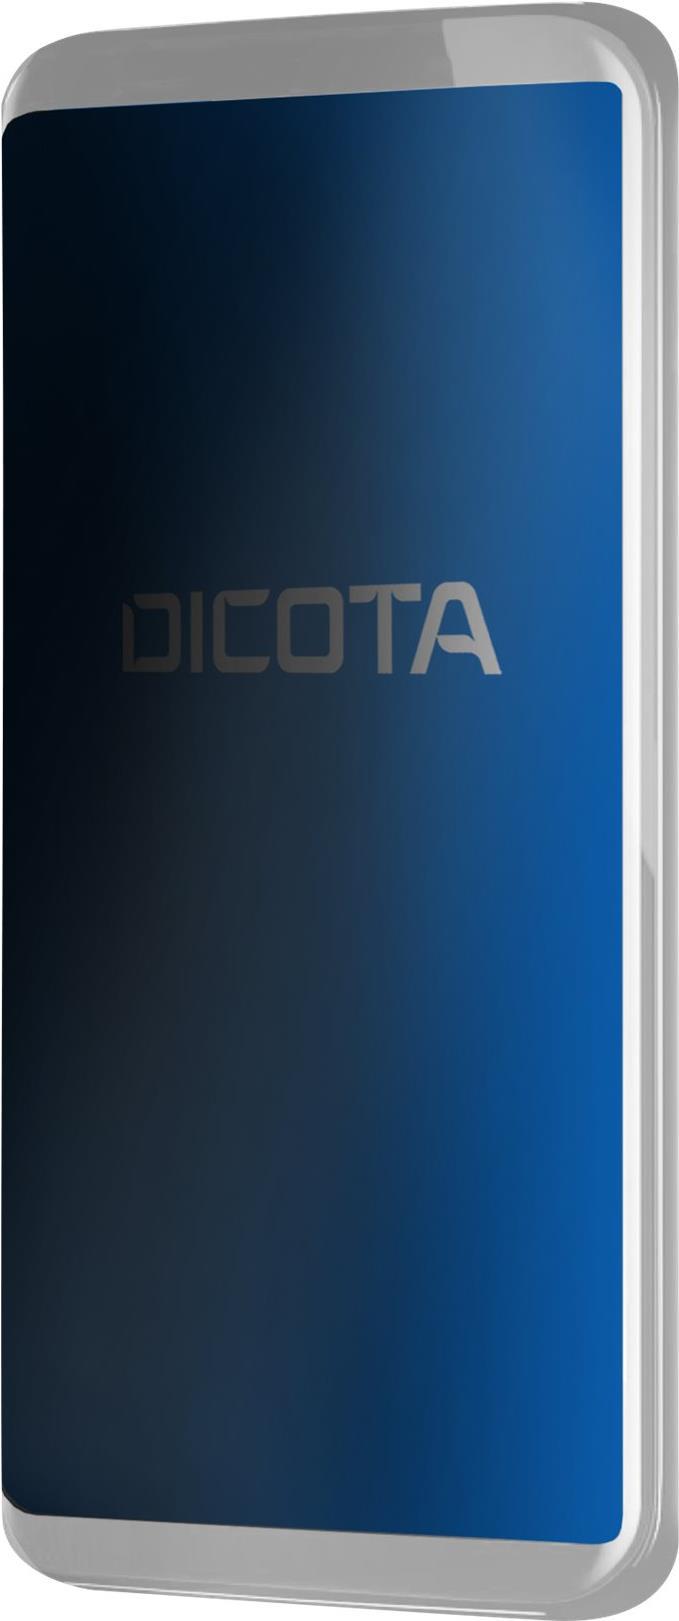 DICOTA Blickschutzfilter für Handy (D70345)